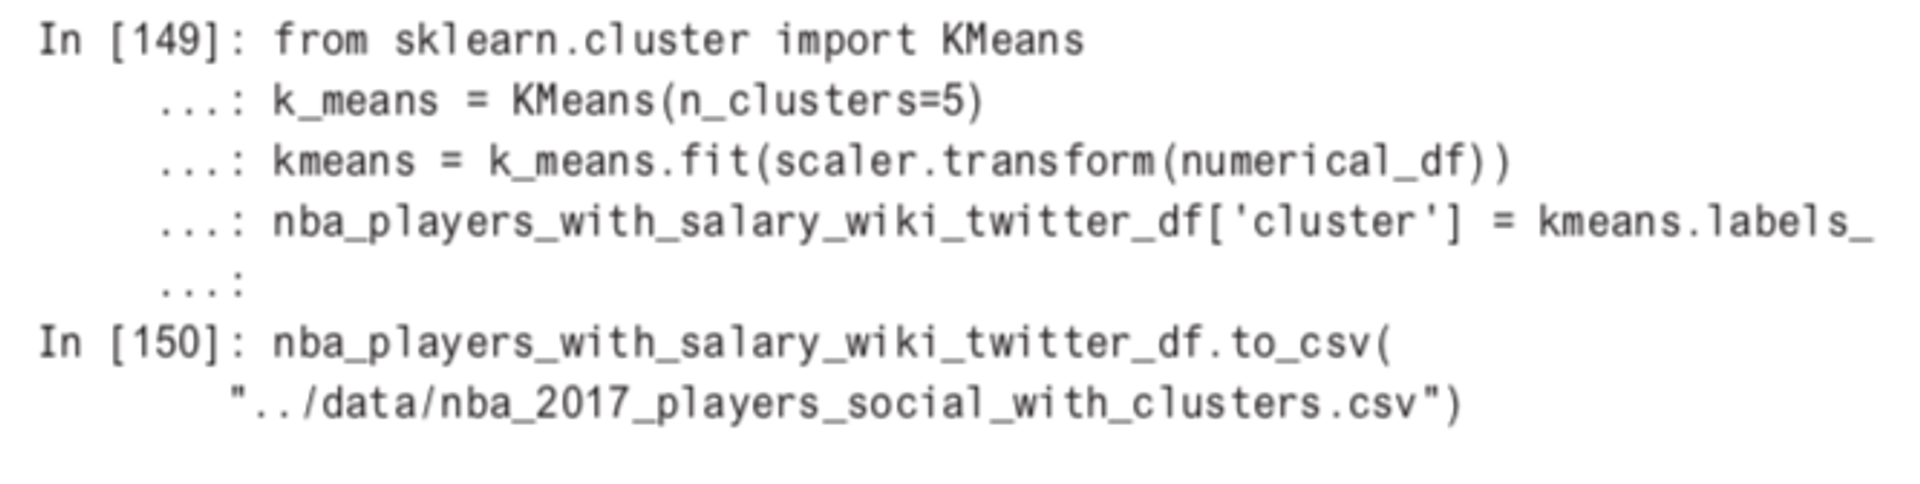 KMeans clustering script for NBA data